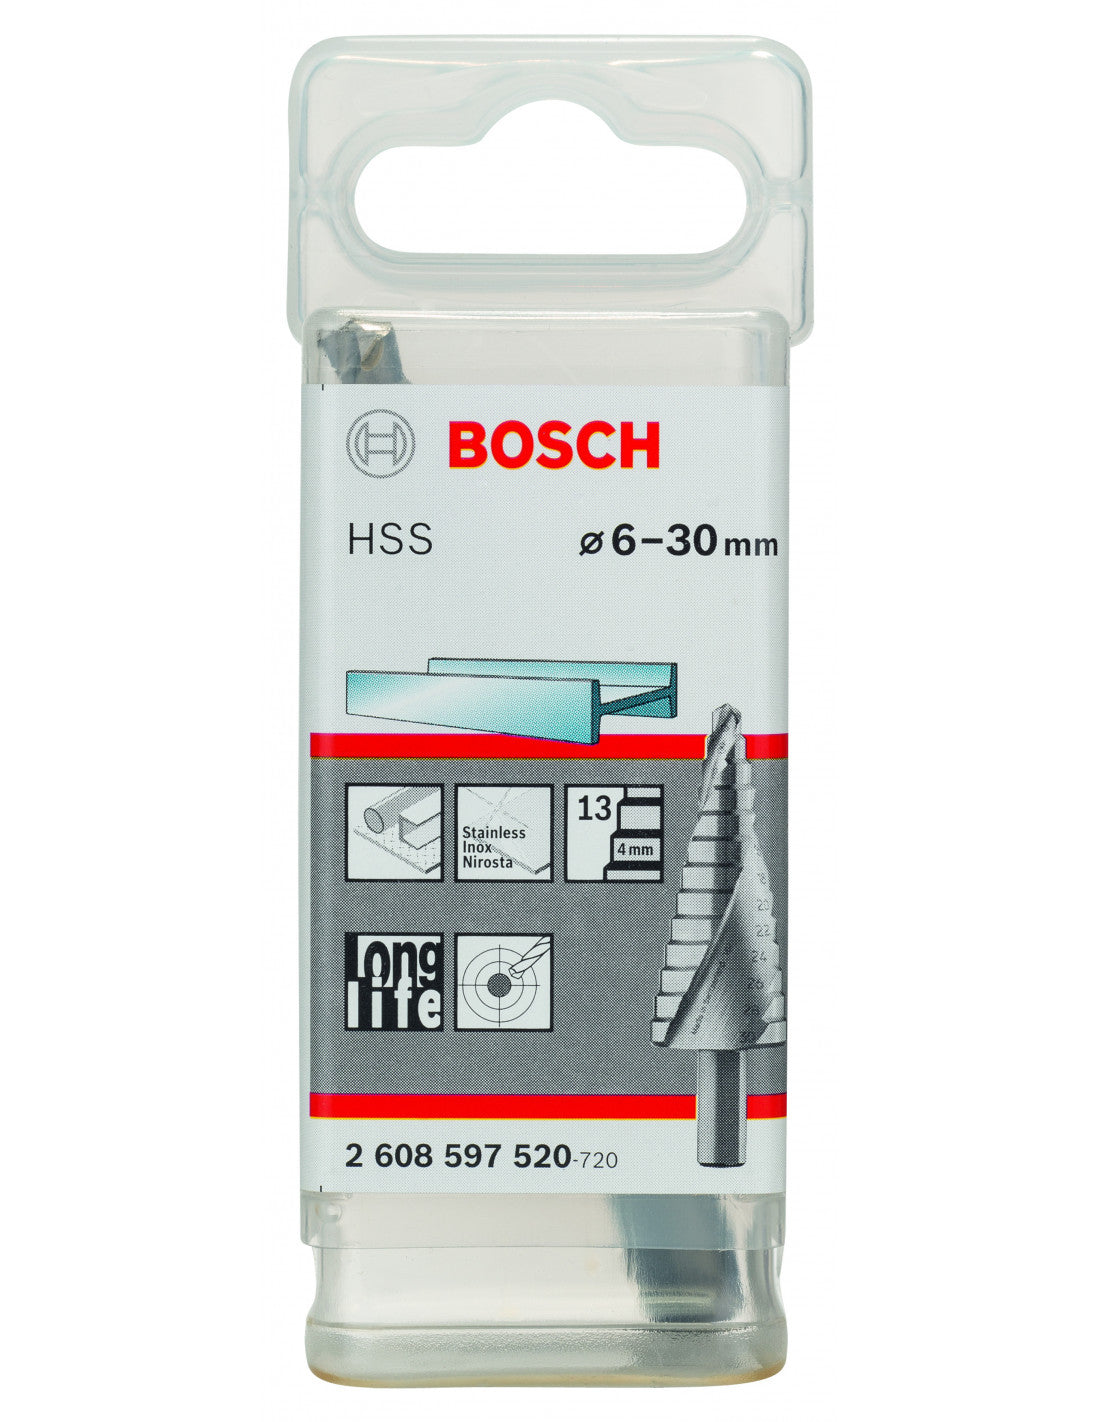 Bosch HSS Step Drill Bit 6-30mm 2608597520 Power Tool Services